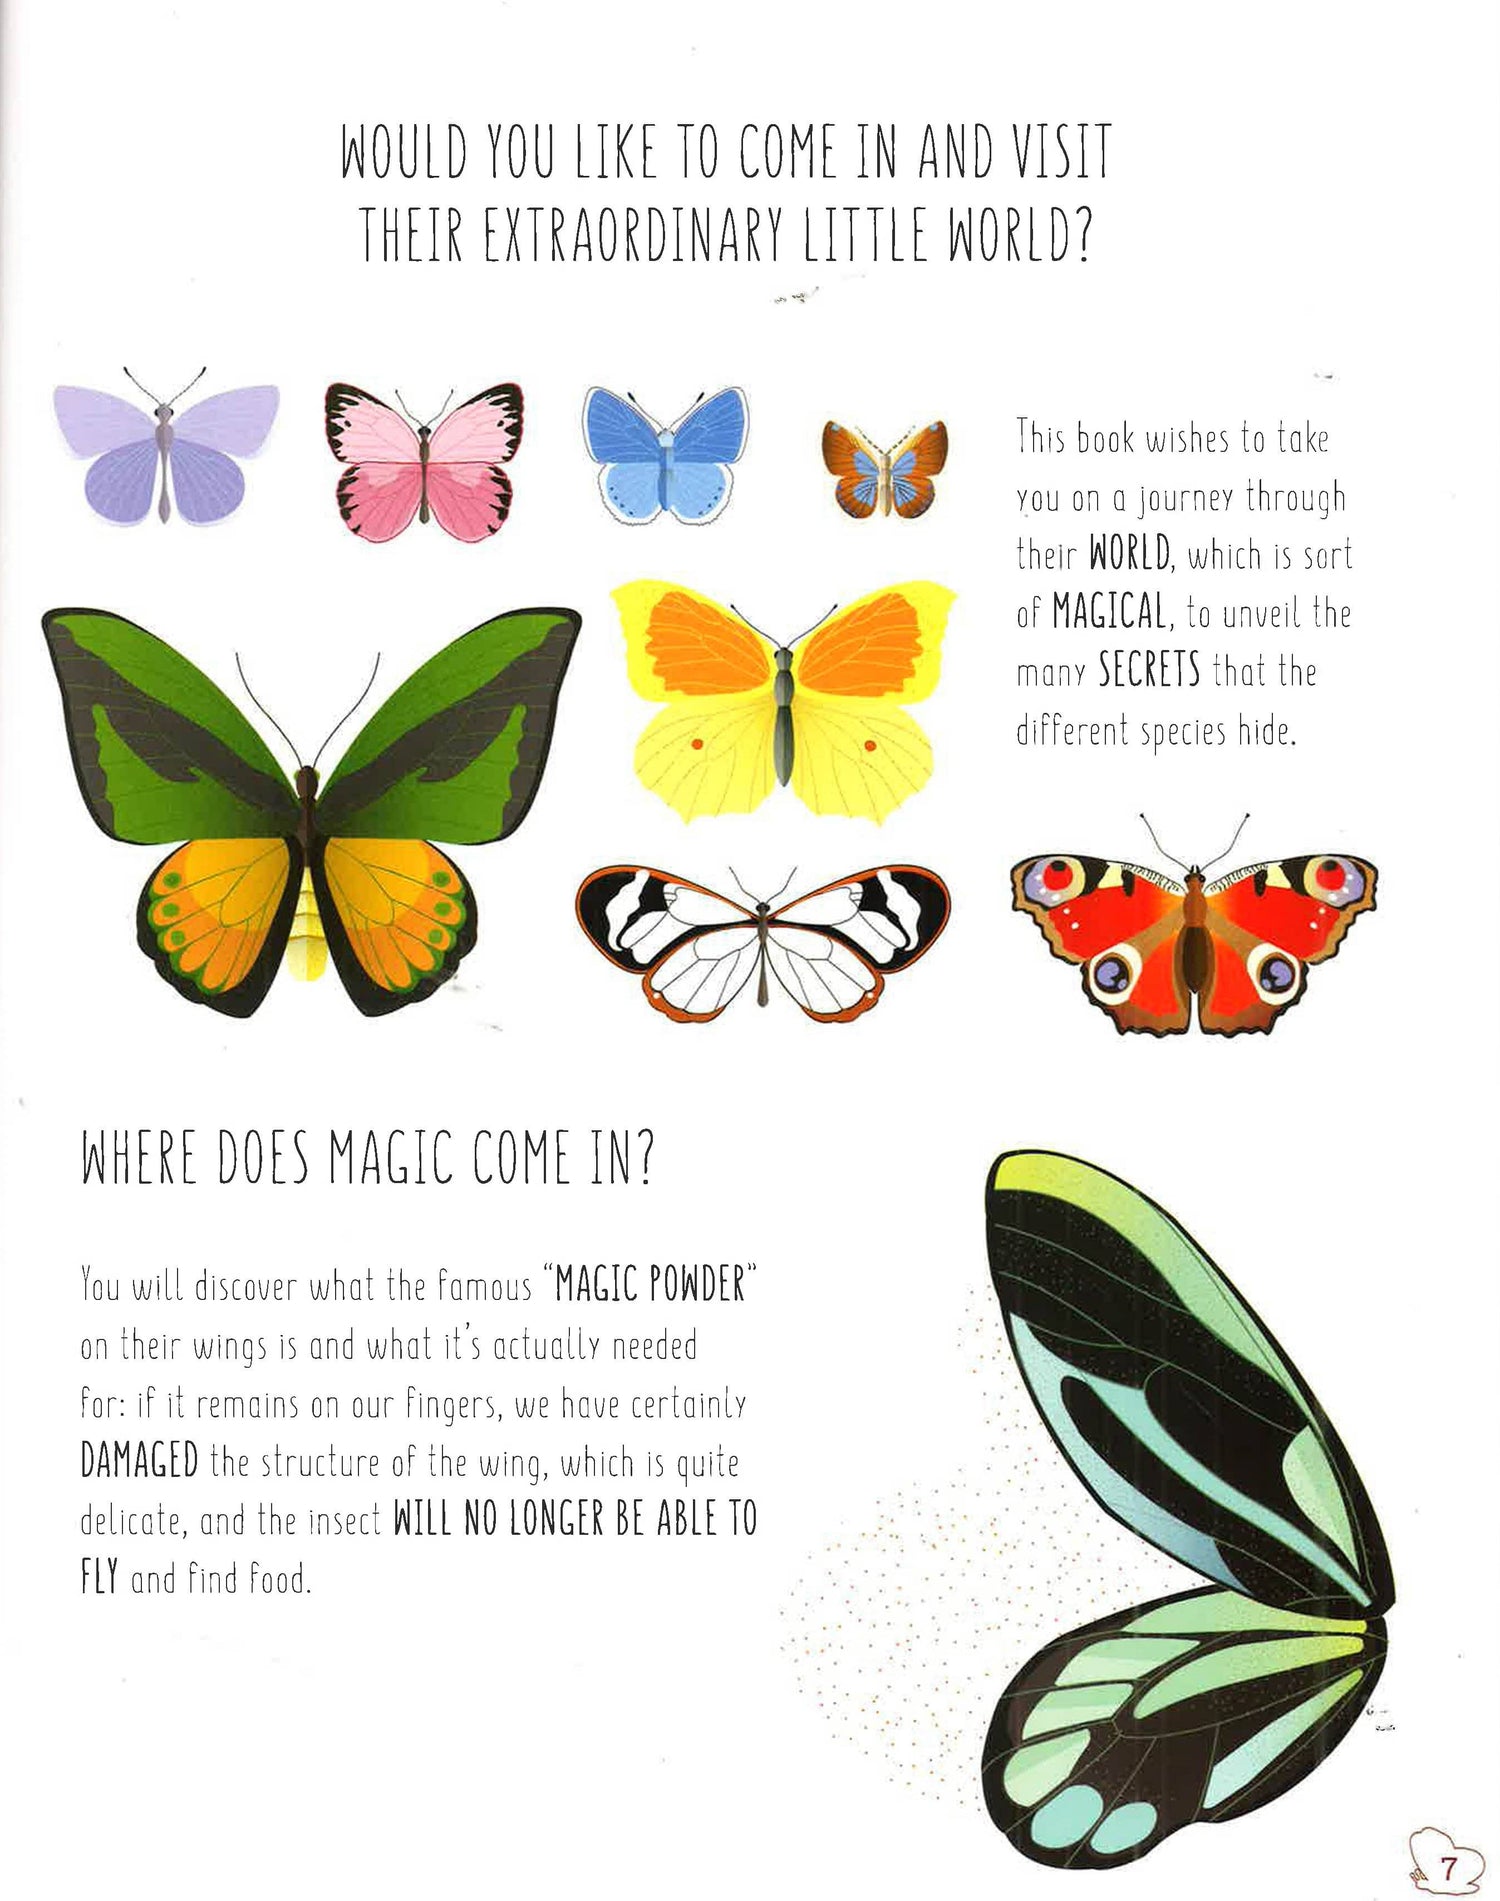 The World Of Butterflies